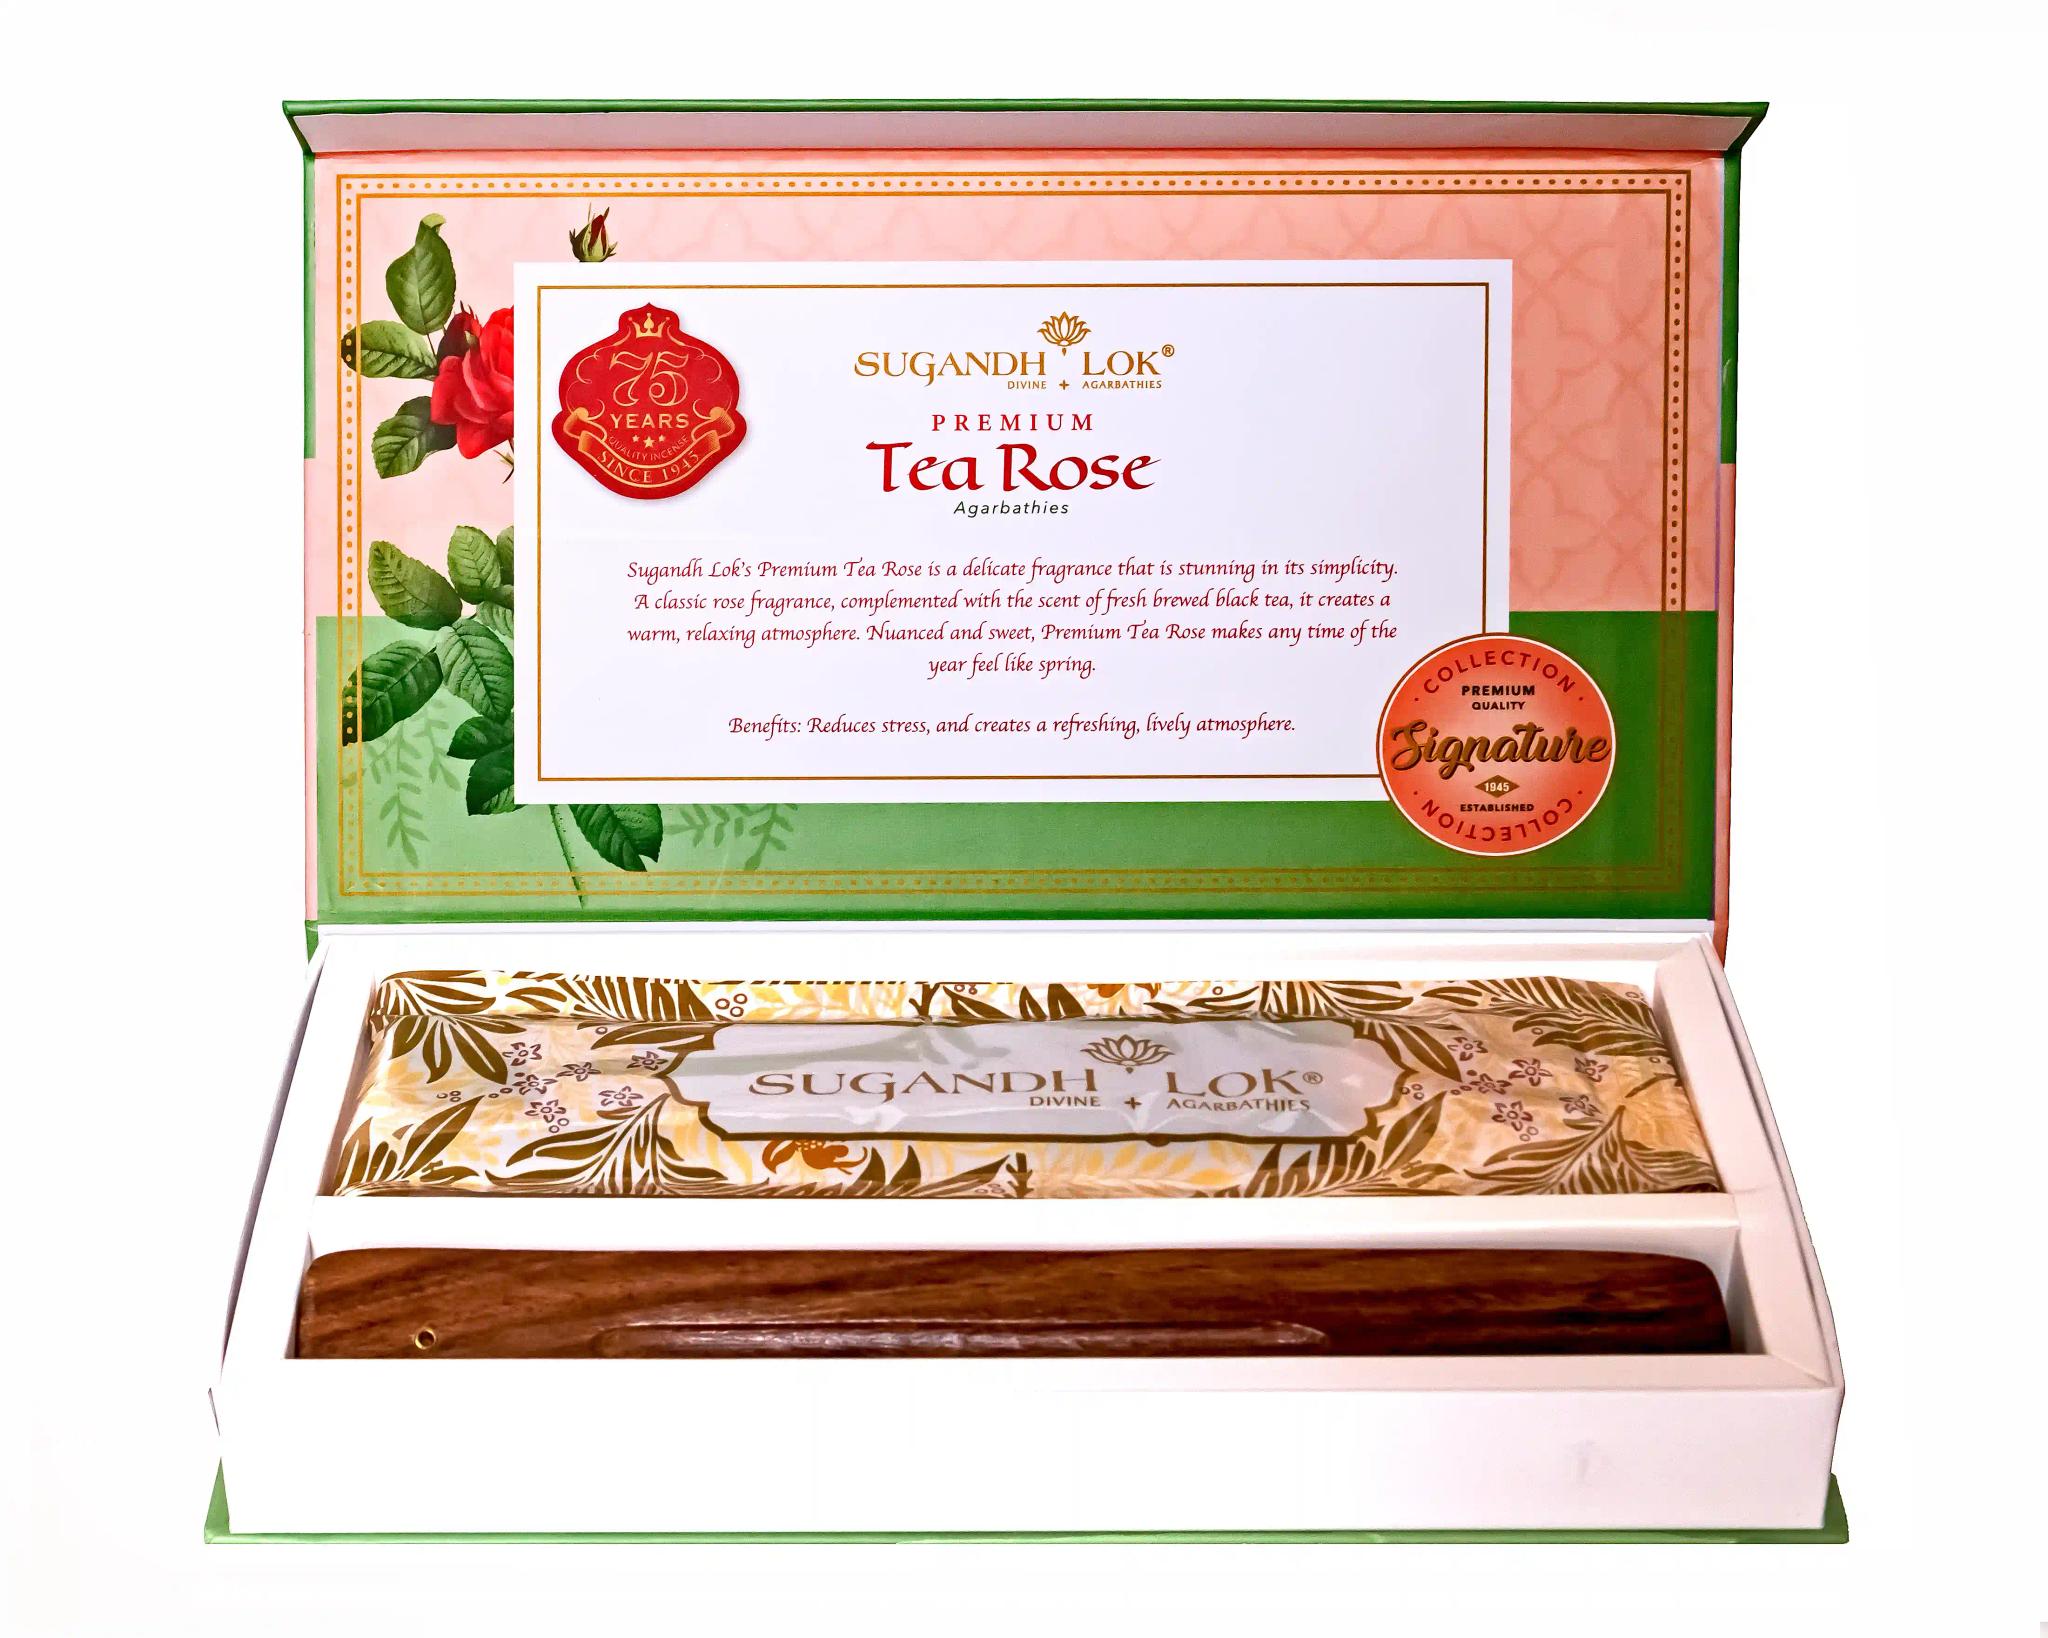 Signature Collection  Tea Rose  Premium Agarbathies